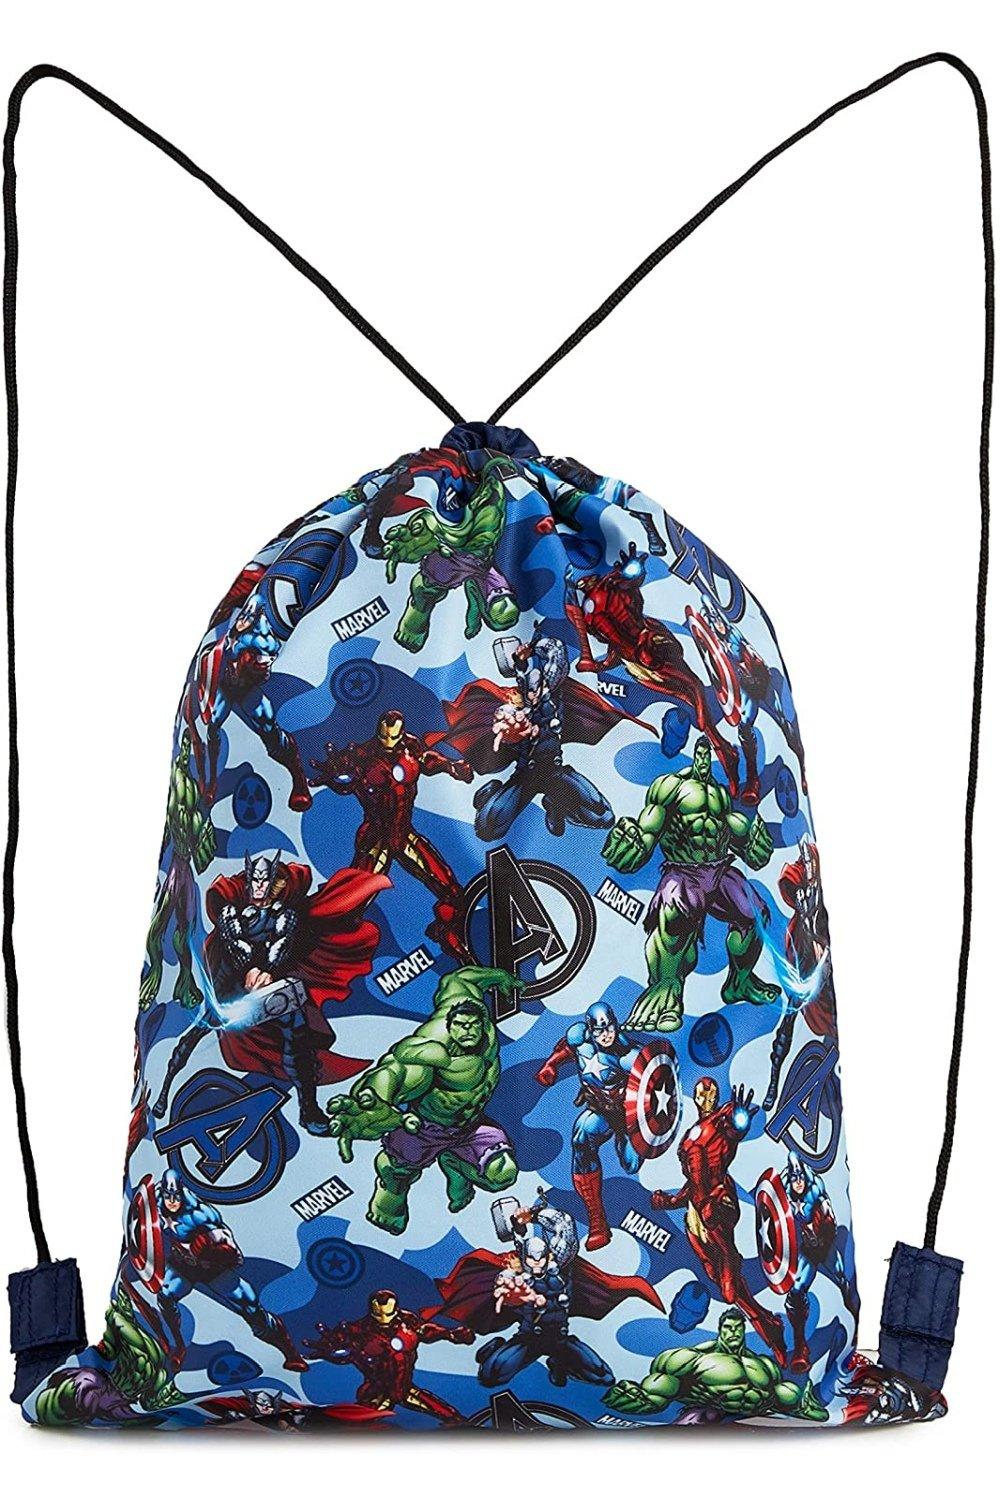 Спортивная сумка Мстителей Marvel, мультиколор marvel avengers adventure library